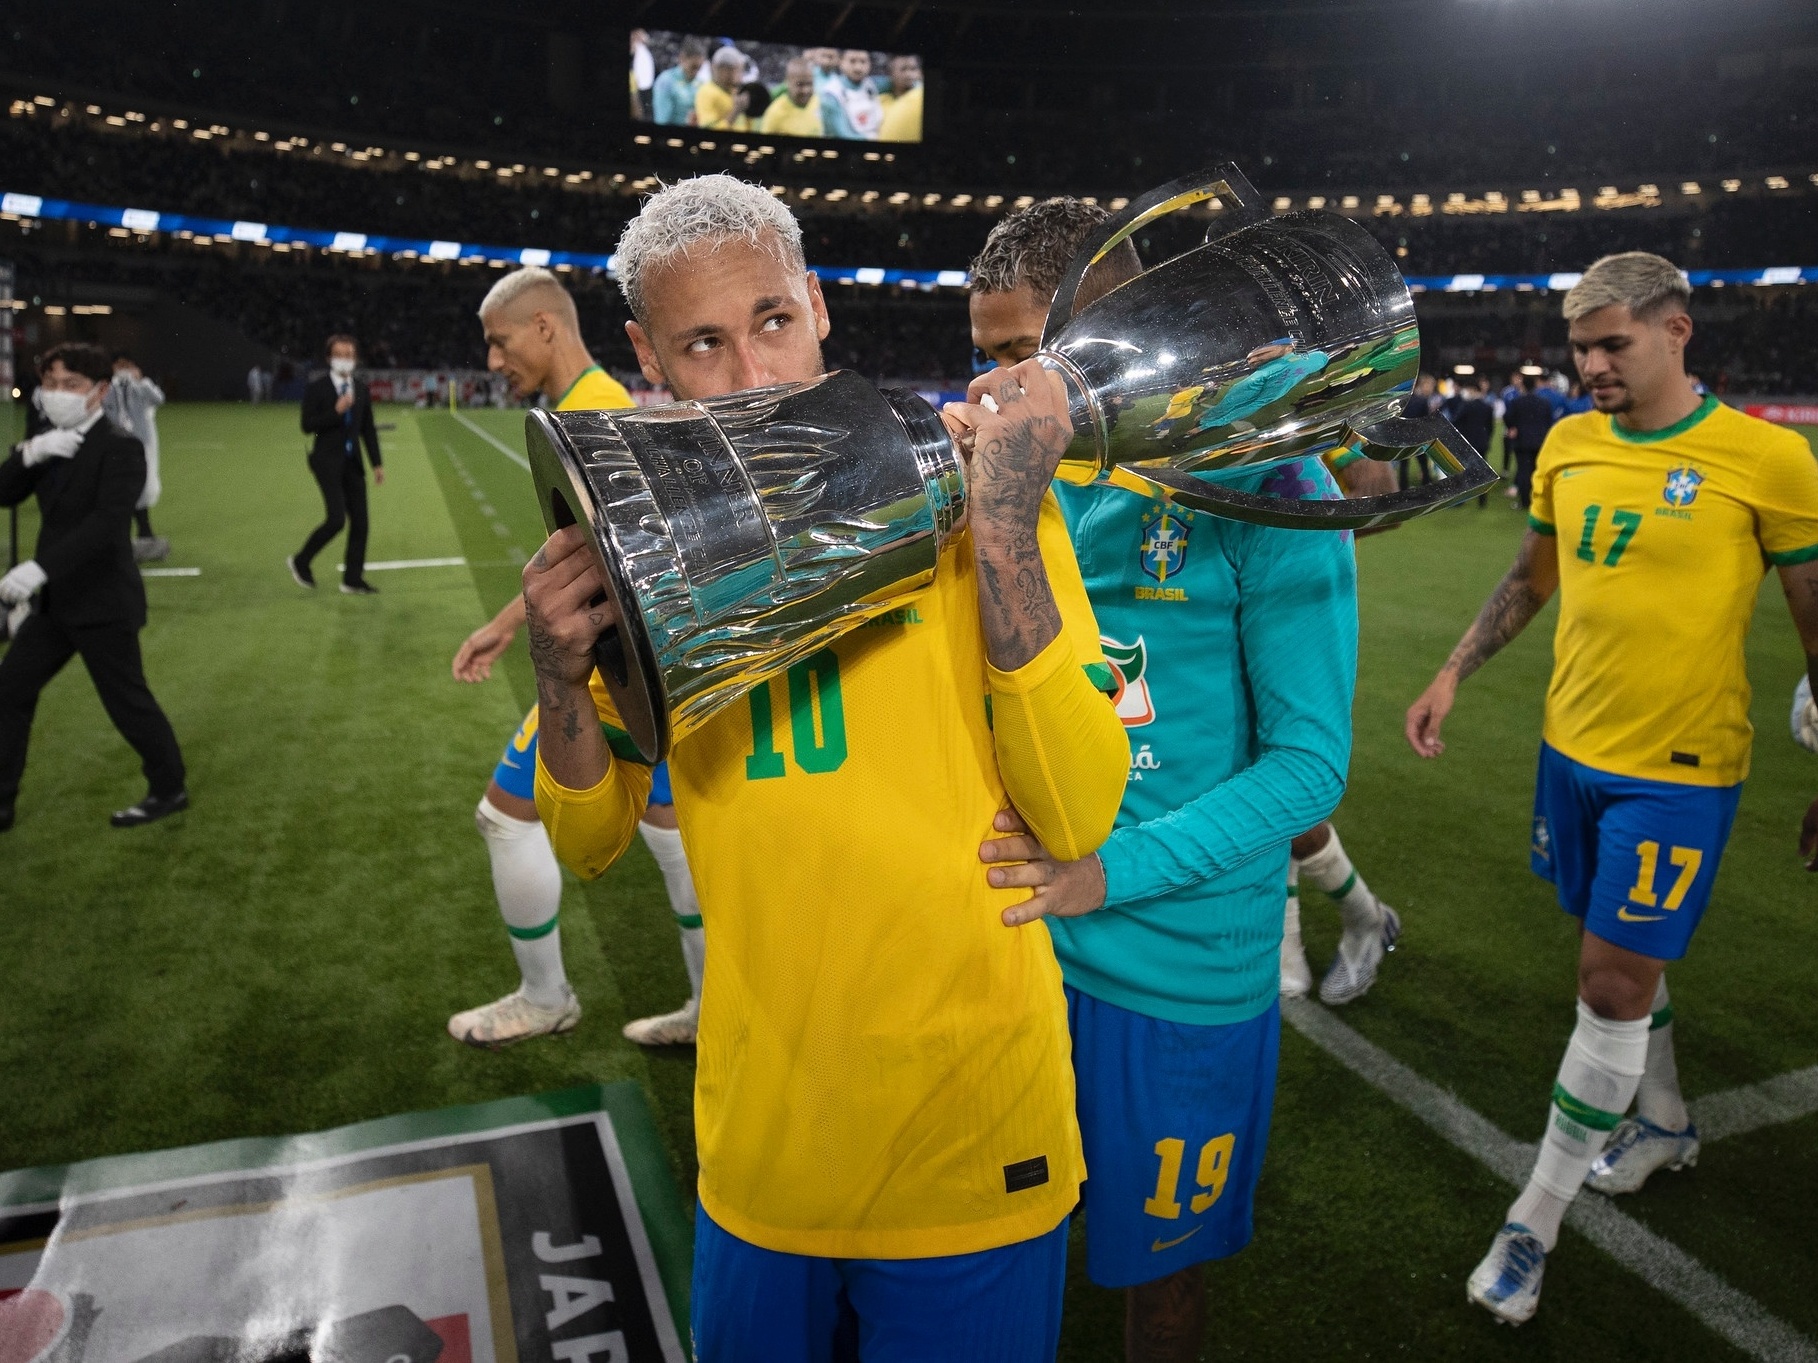 Copa 2022: veja datas de jogos do Brasil e outras seleções - 02/04/2022 -  Esporte - Folha